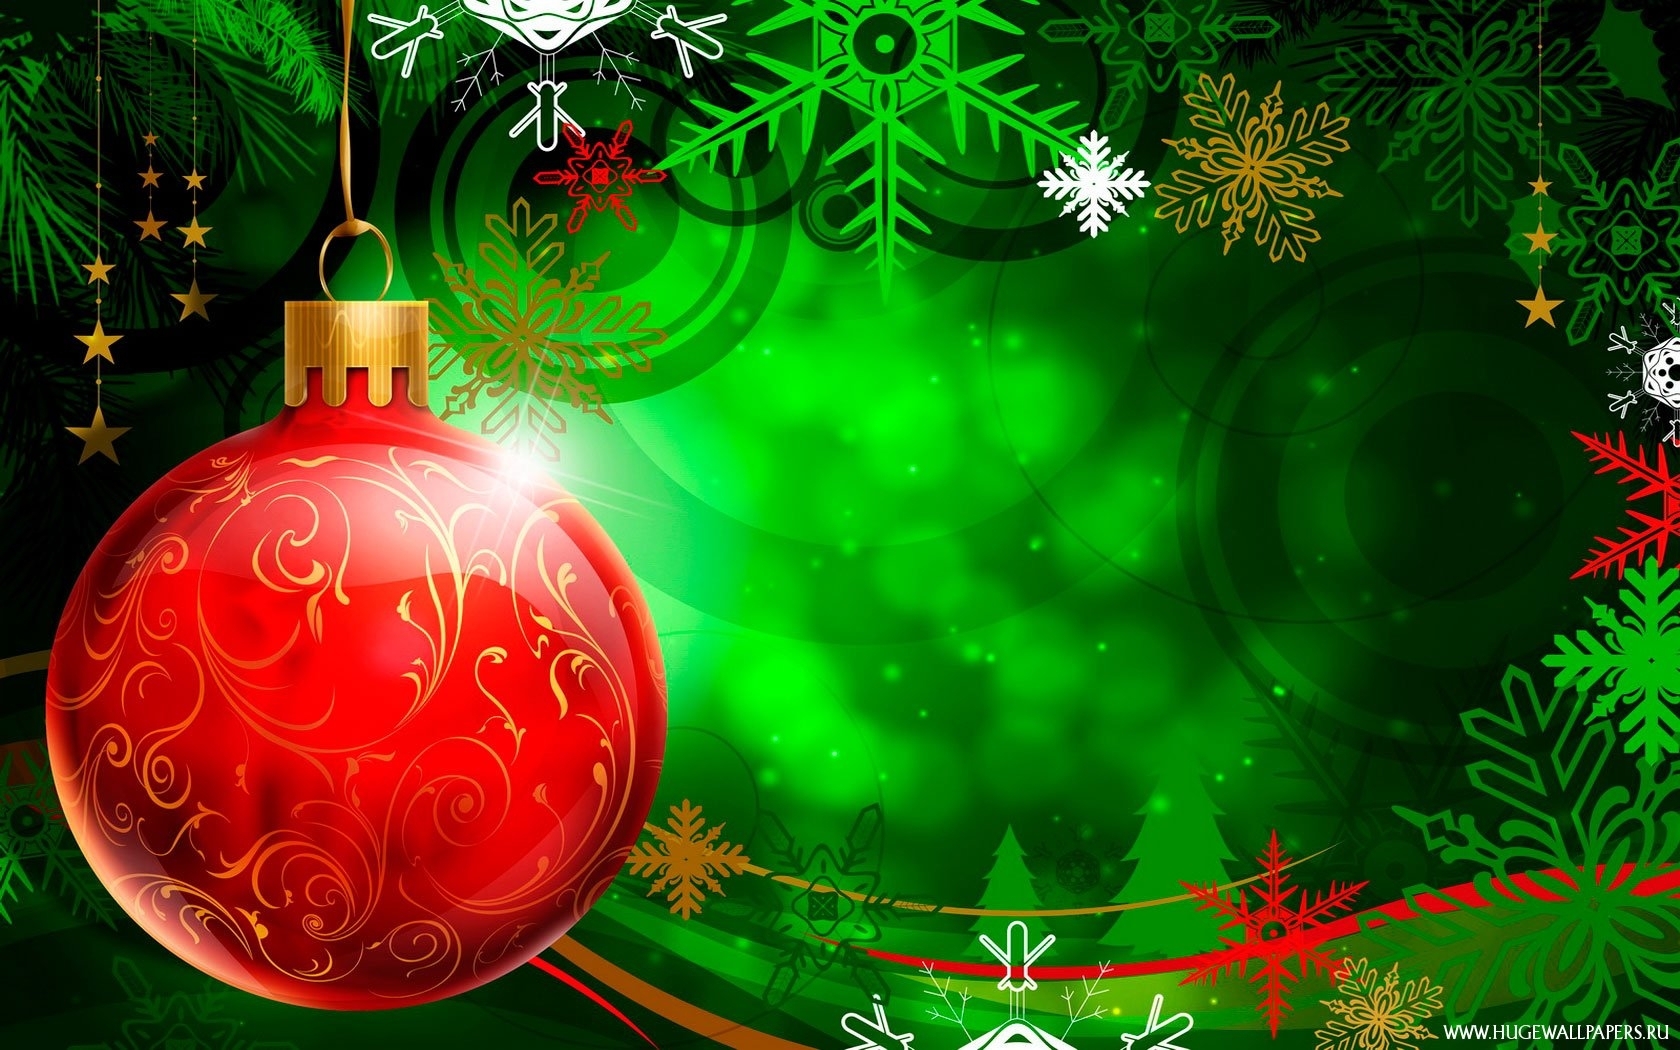 Скачать обои бесплатно Новый Год (New Year), Игрушки, Рождество (Christmas Xmas), Рисунки картинка на рабочий стол ПК